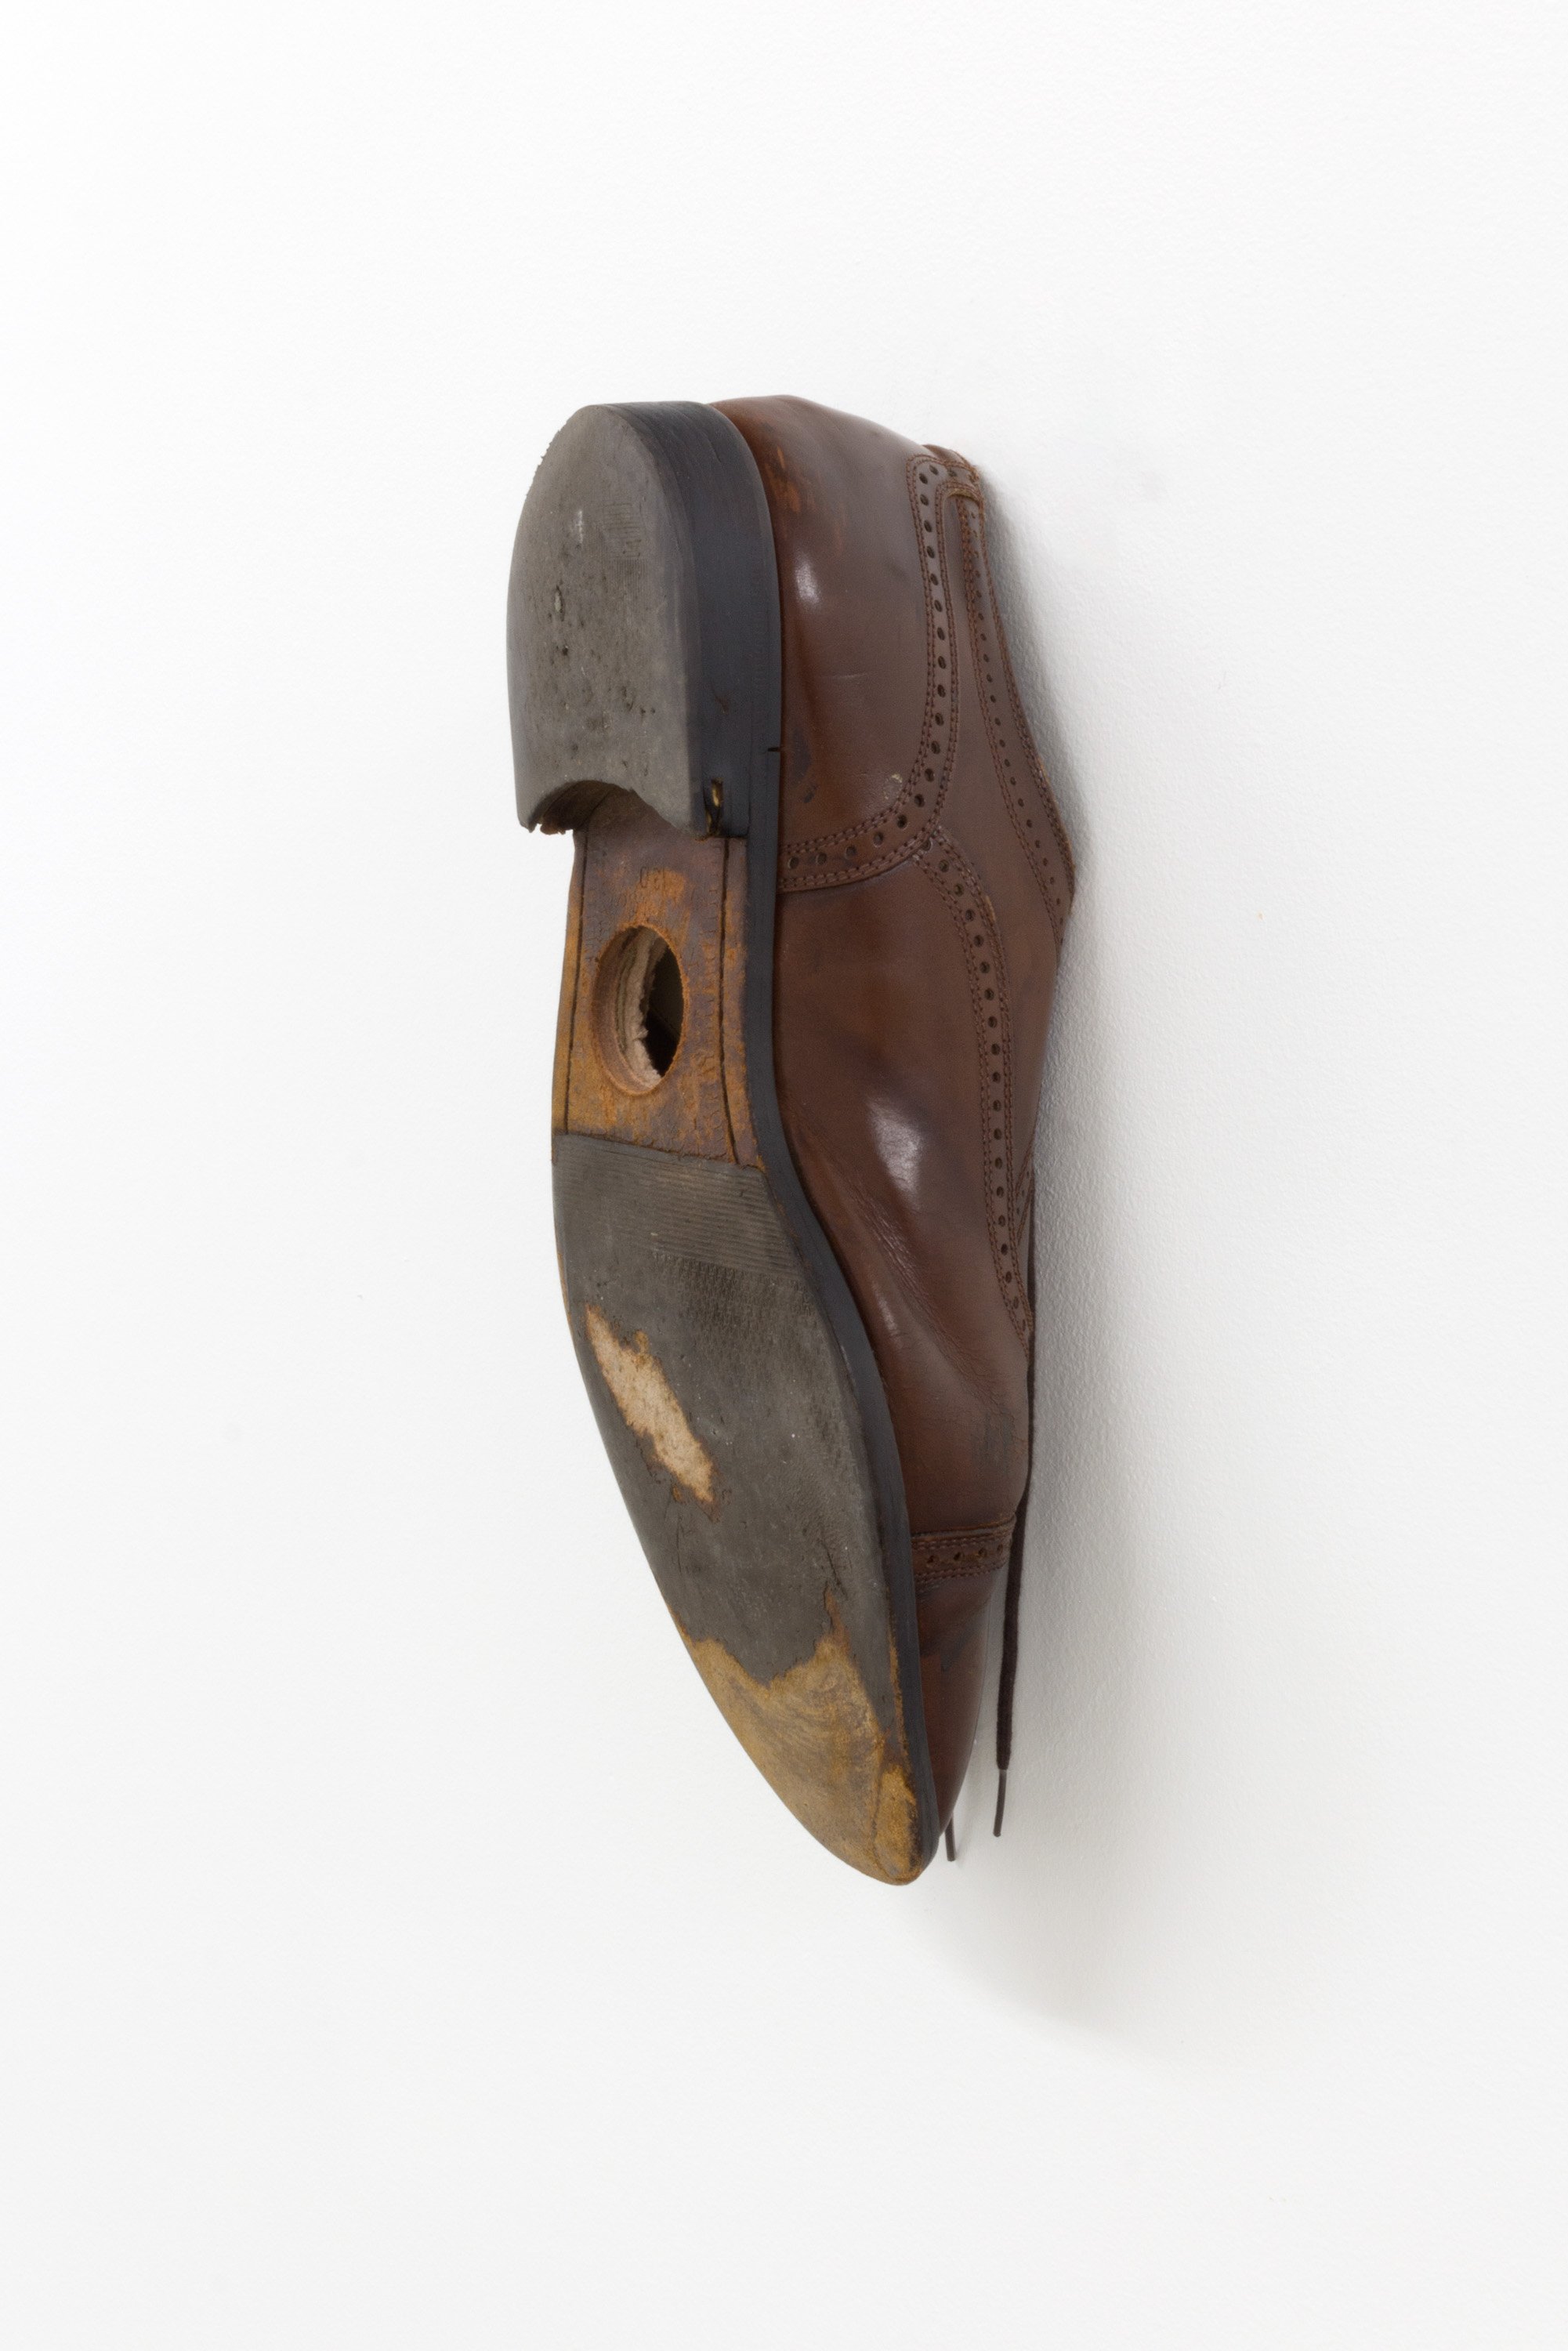  Bea Fremderman  Birdhouse , 2022 Men's dress shoe 12.75 x 4.5 x 5 in 